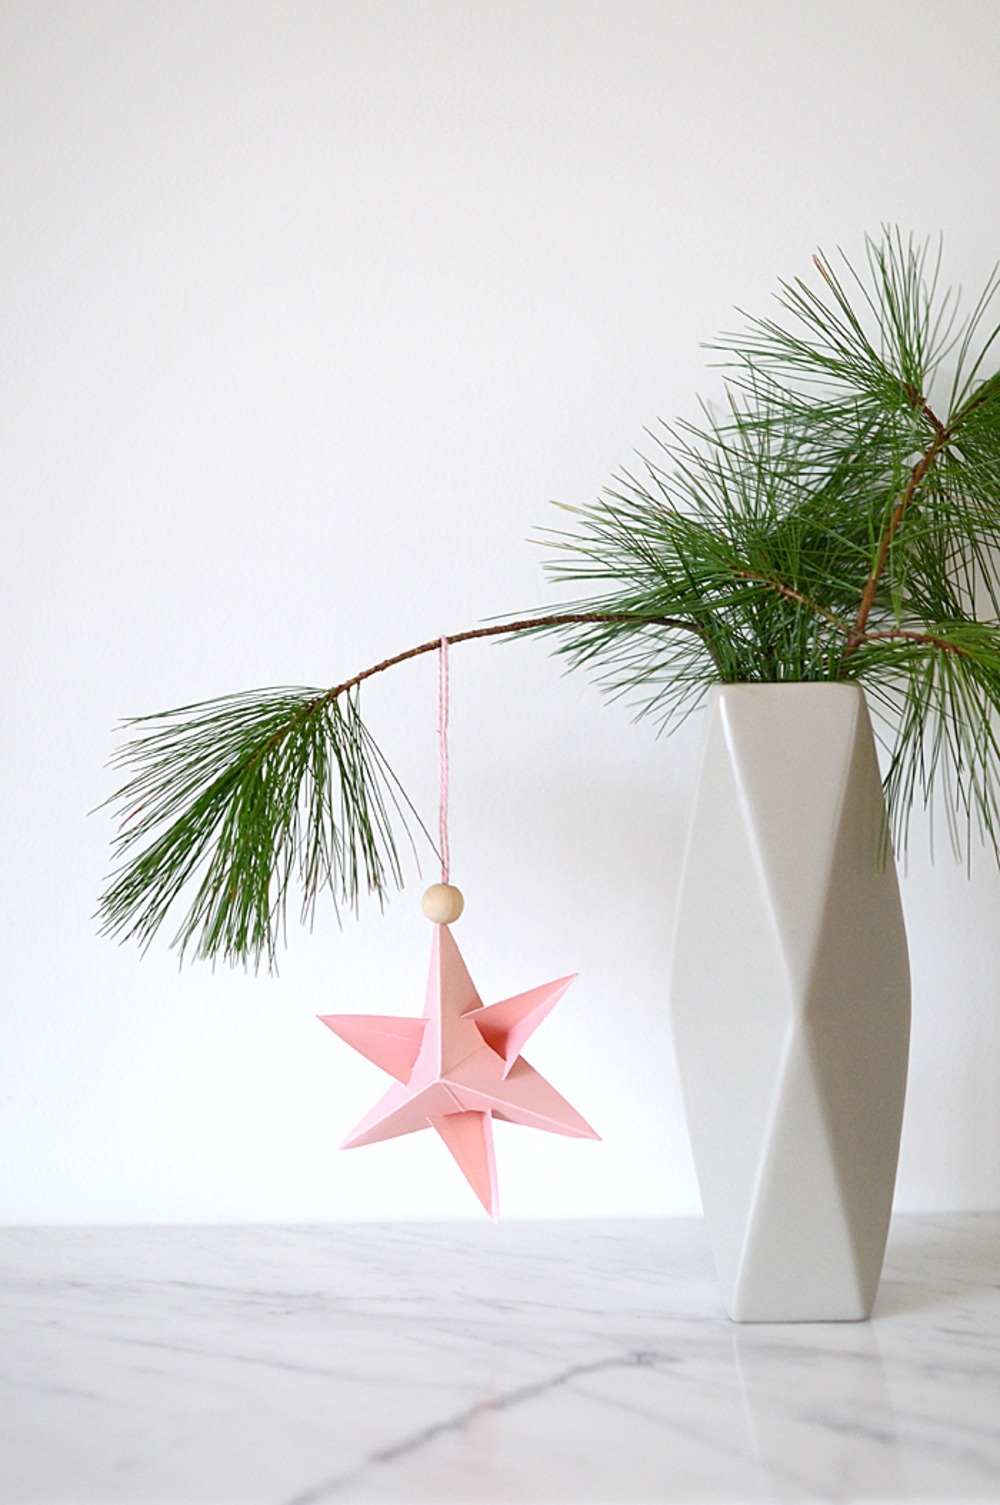 Decoração de Natal lindamente projetada com galhos de árvores em um vaso decorado com estrela de papel pendurada com conta de madeira